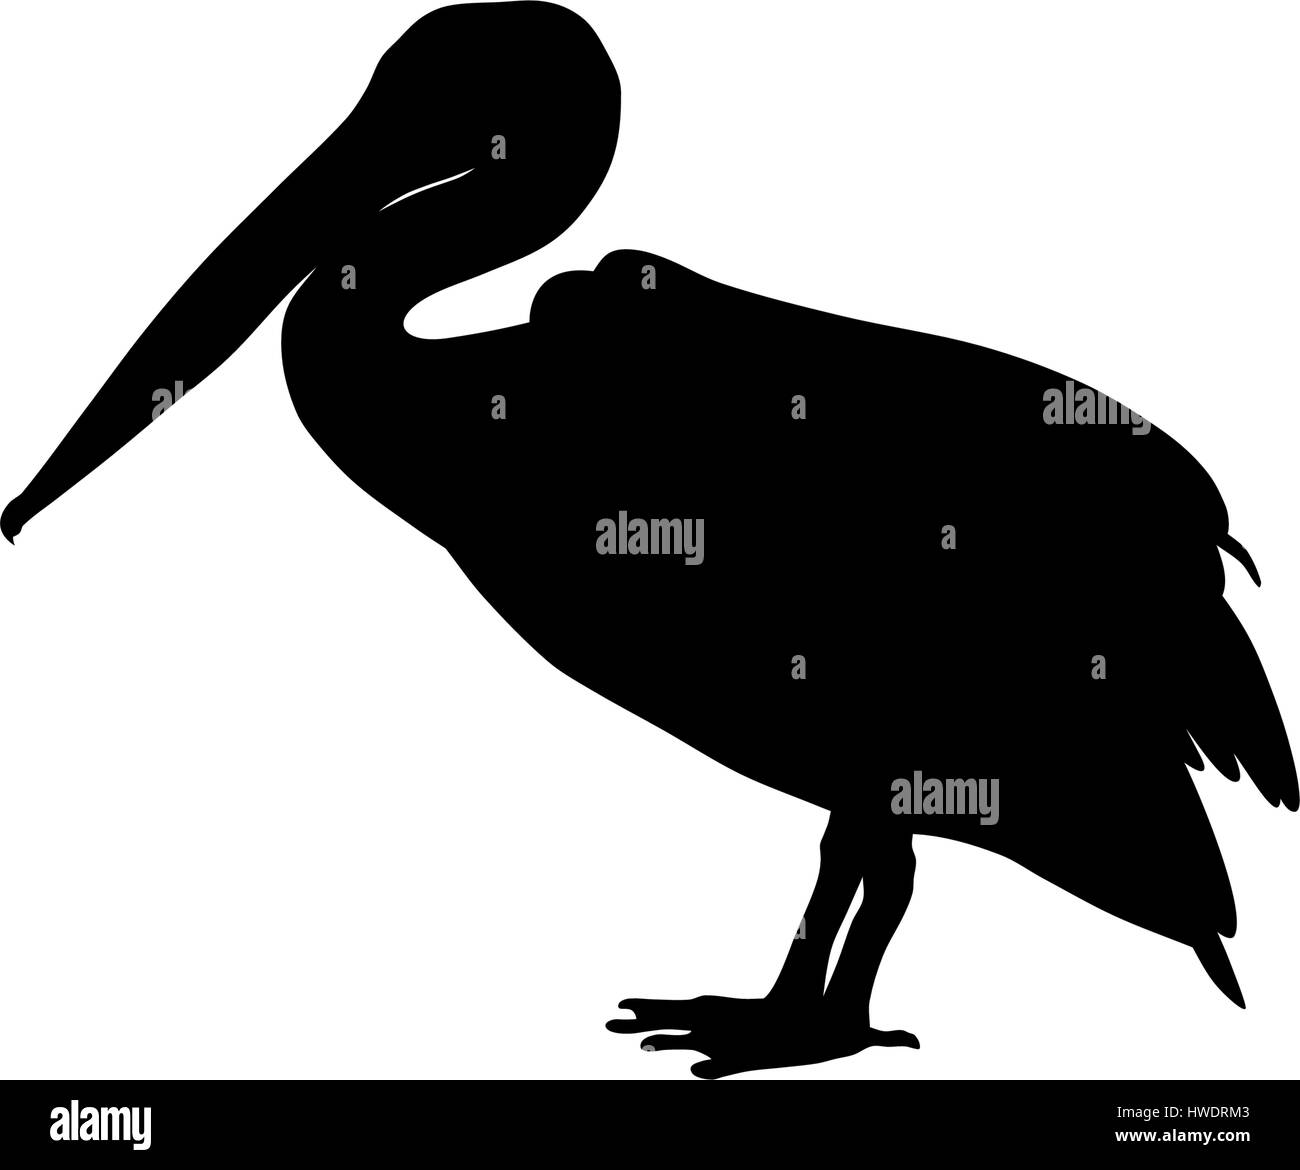 Illustrazione Vettoriale di pelican silhouette Illustrazione Vettoriale